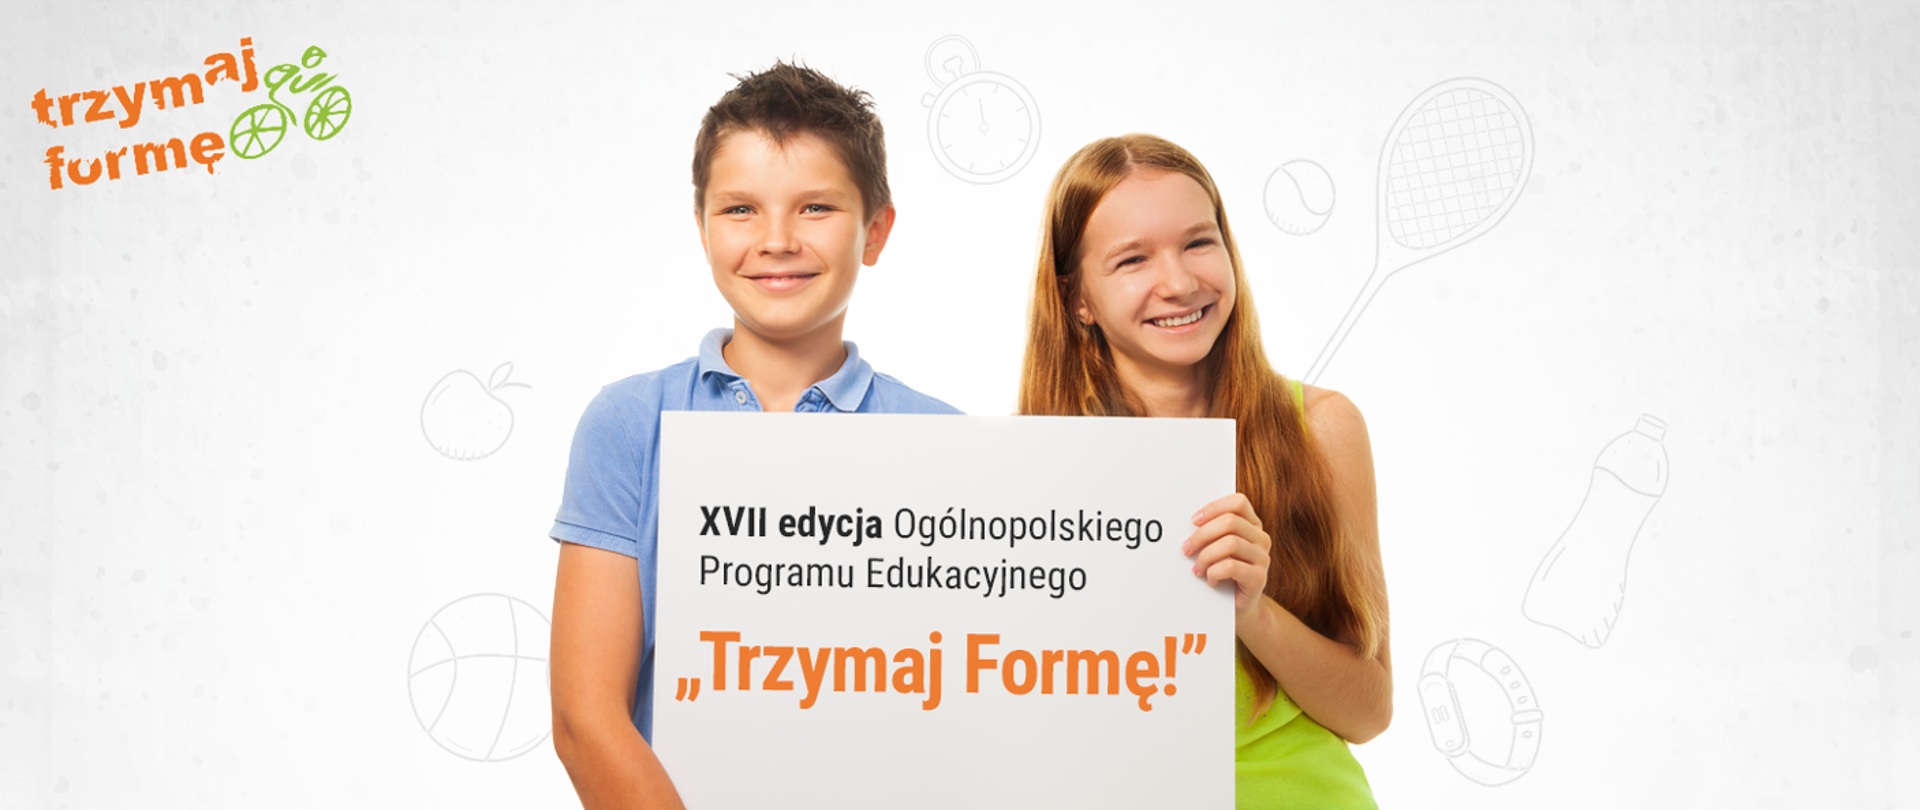 Zdjęcie dwójki dzieci (chłopiec i dziewczynka) trzymający tabliczkę z napise3m "Trzymaj formę!".